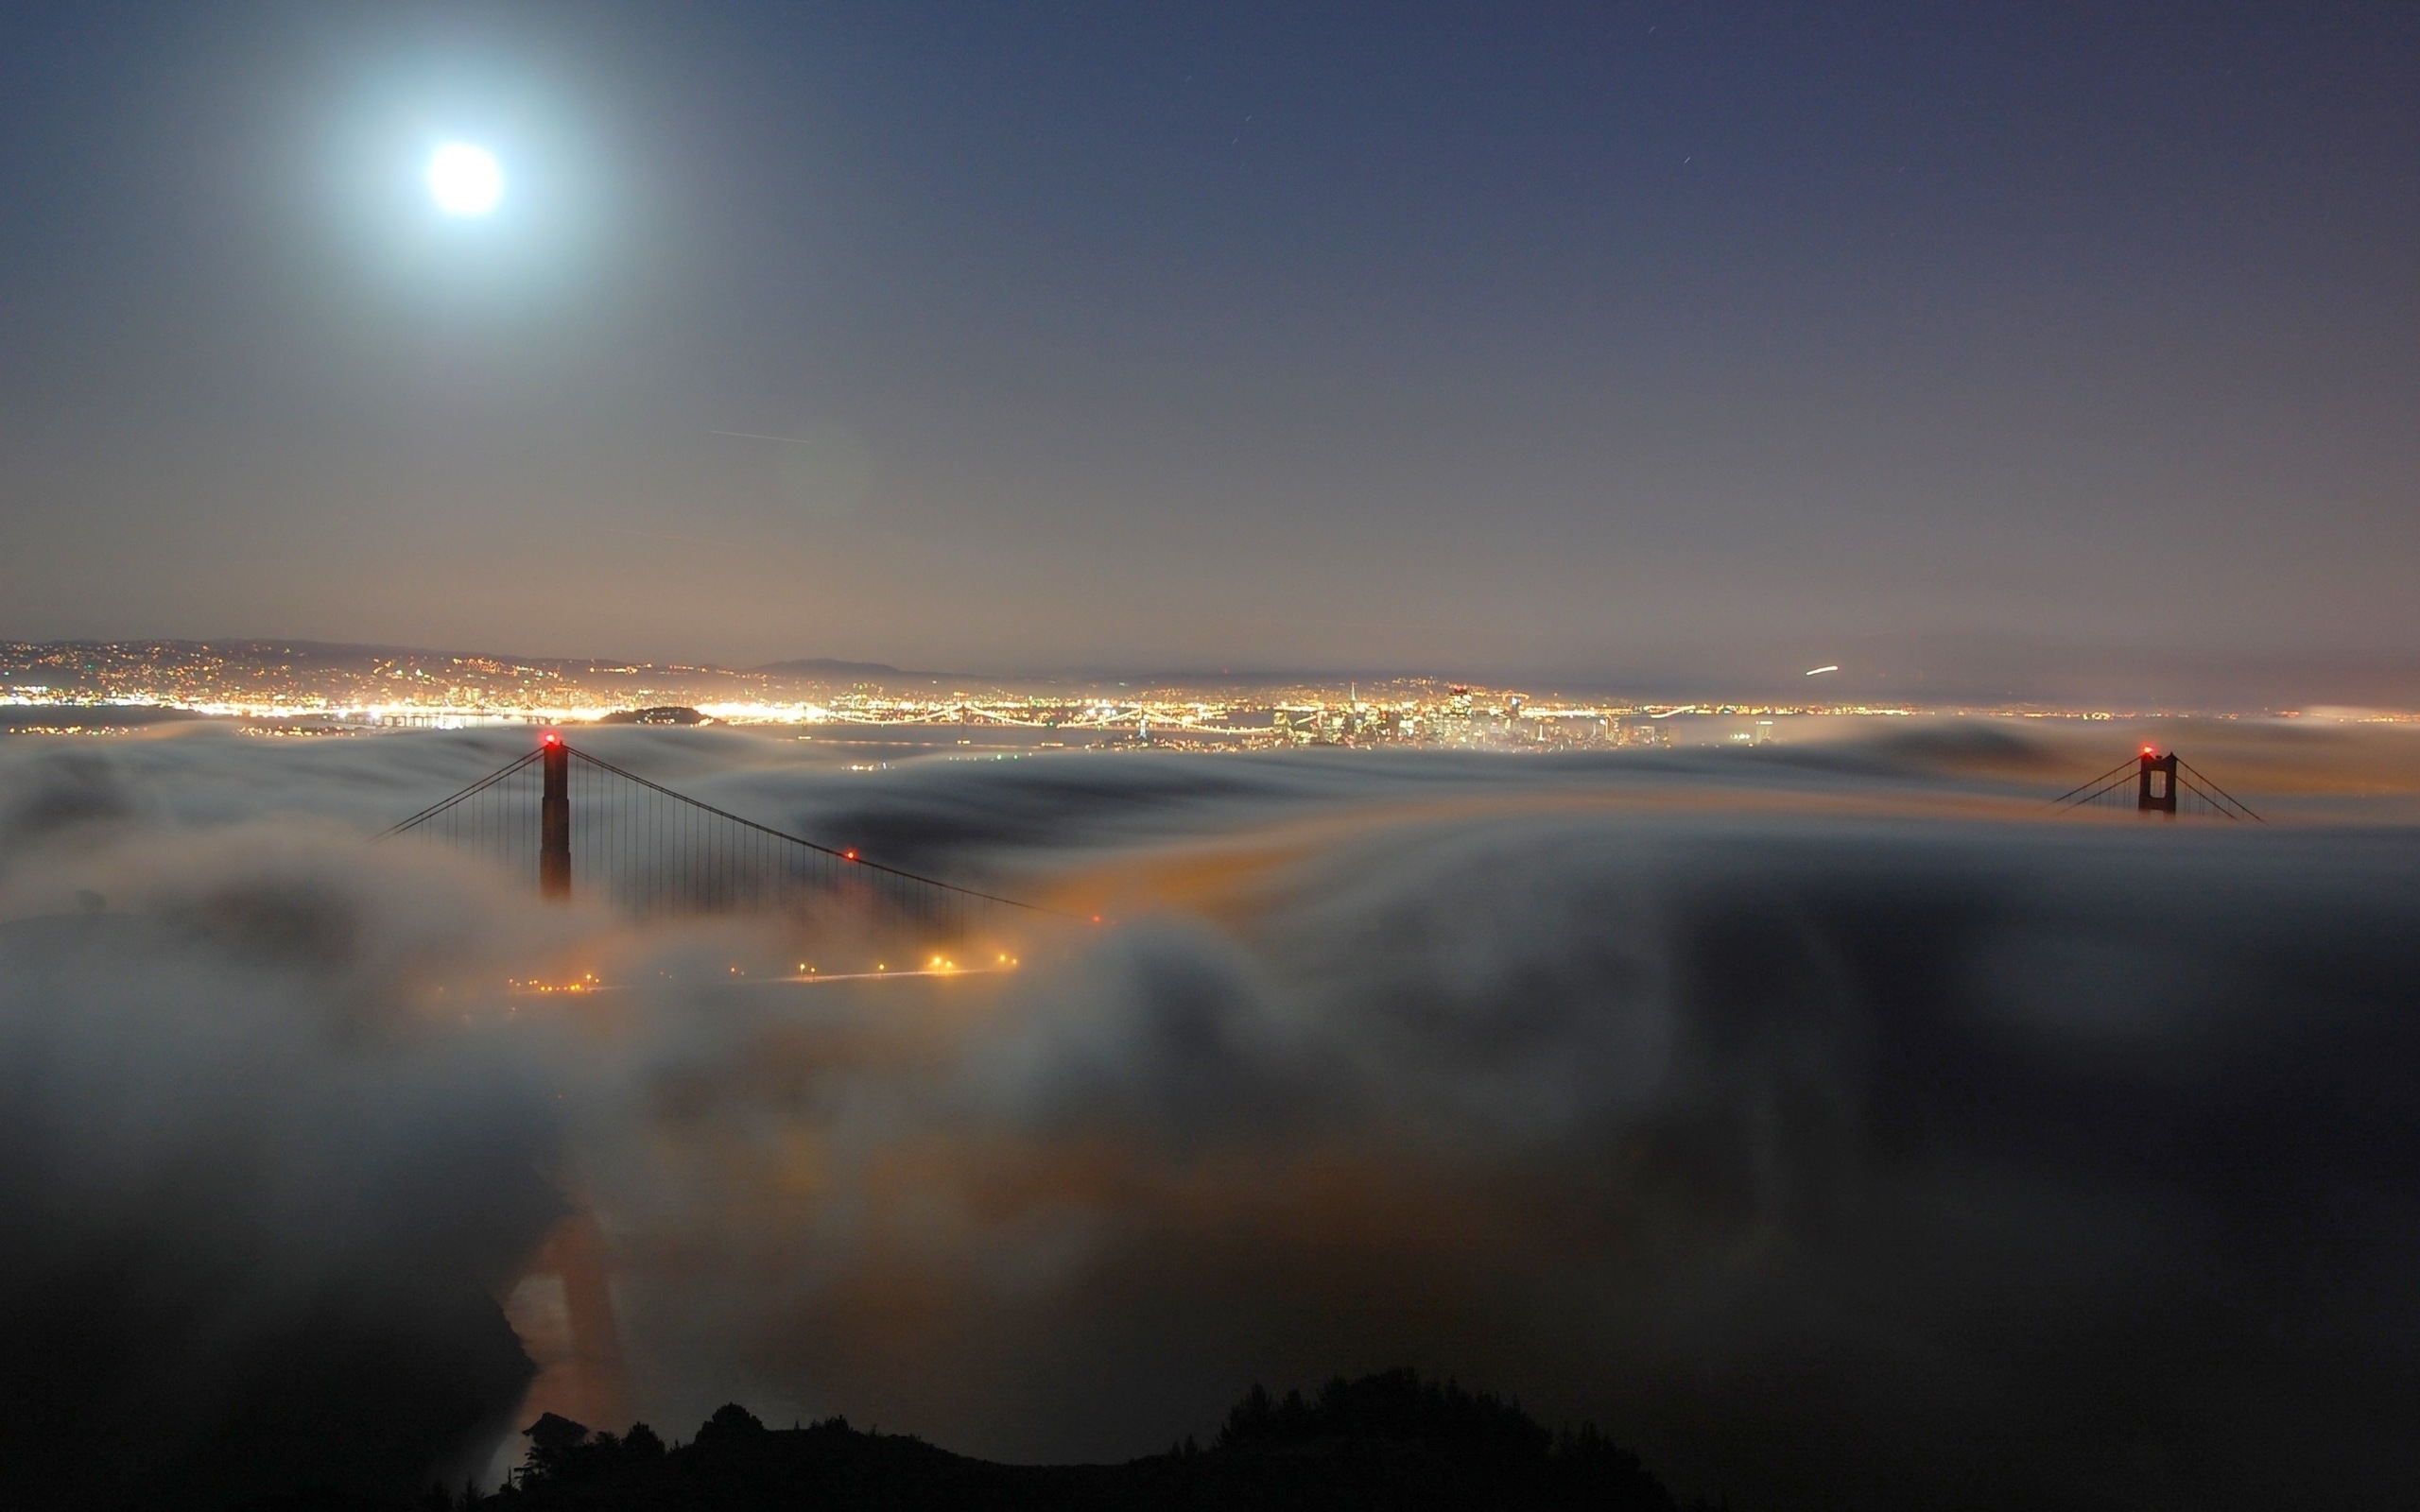 3d обои Cан-франциско, золотые ворота / San Francisco, Golden gate, bridge, ночной вид на мост под облаками  луна # 51426